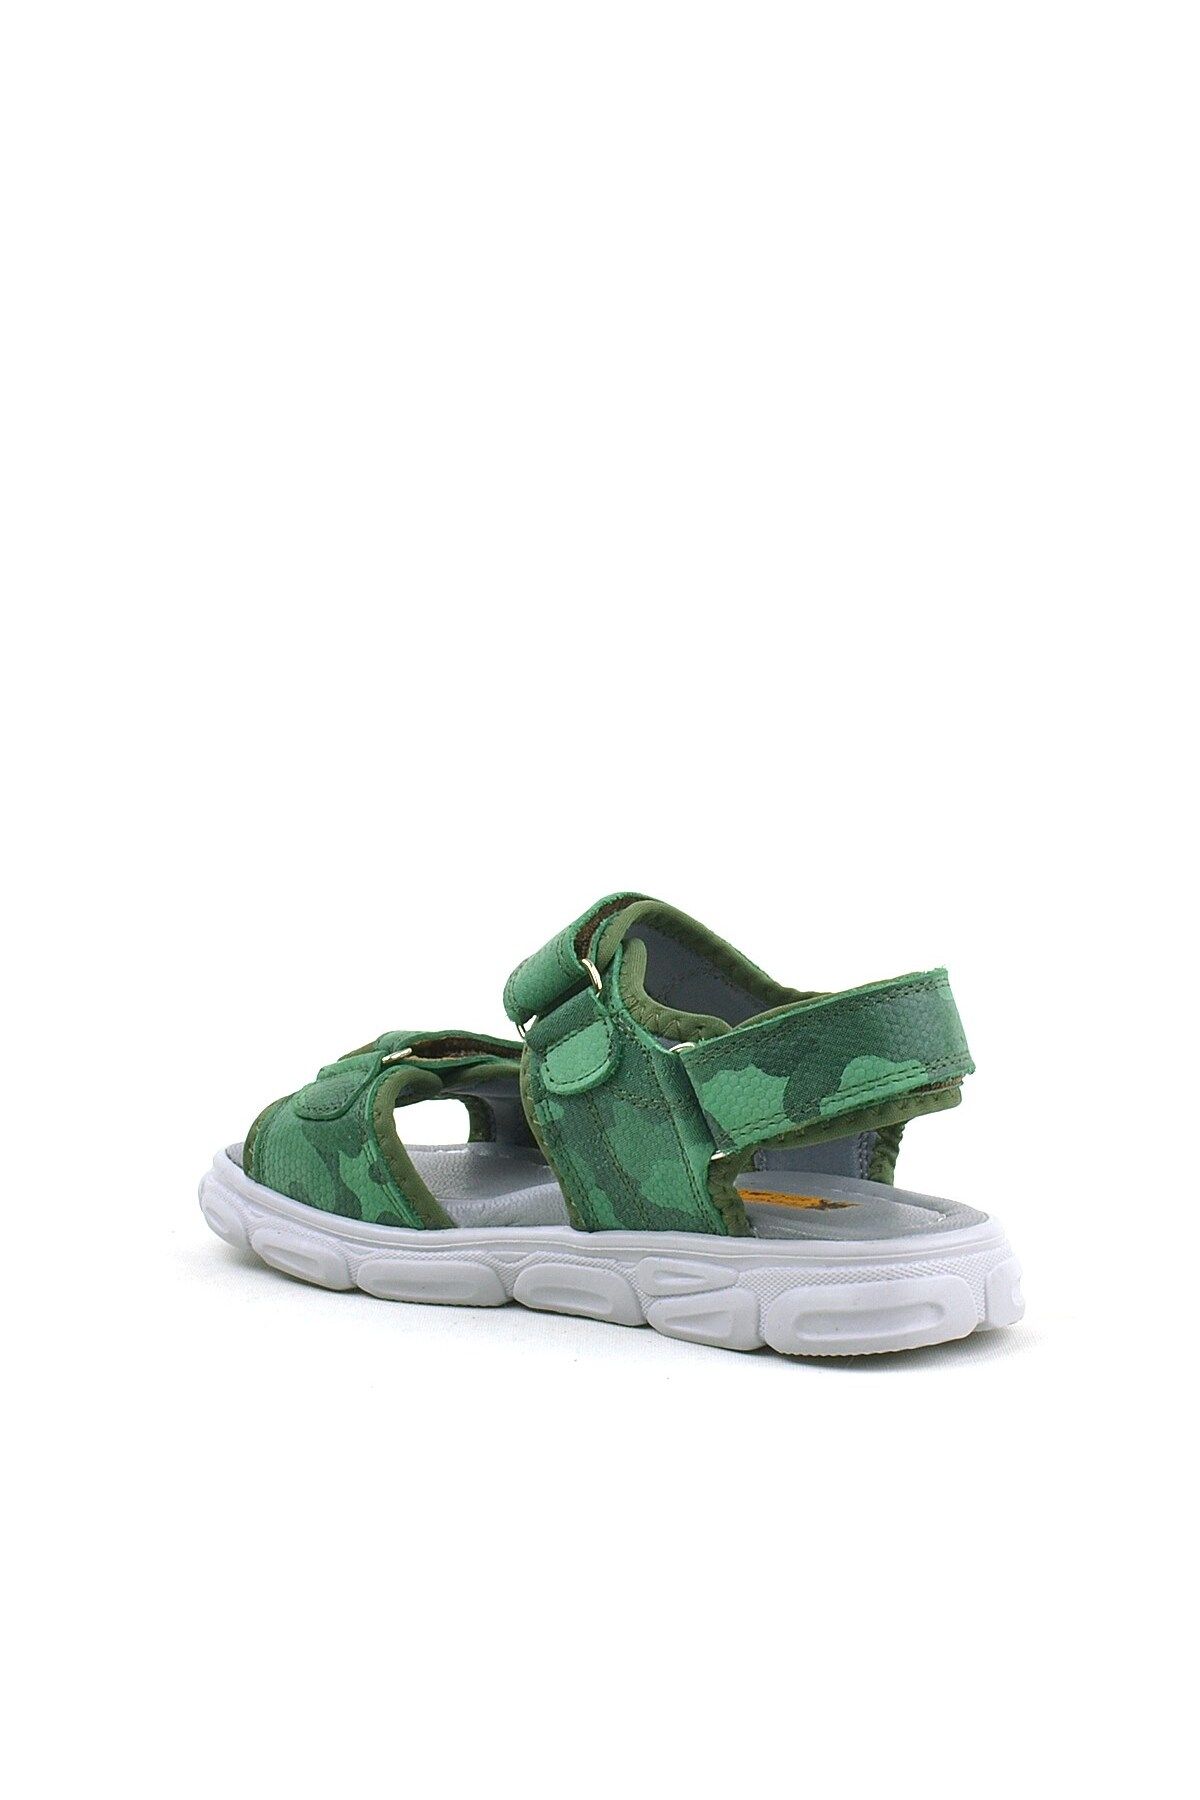 Rakerplus Wisps Hakiki Deri Yeşil Kamuflaj Çocuk Sandalet